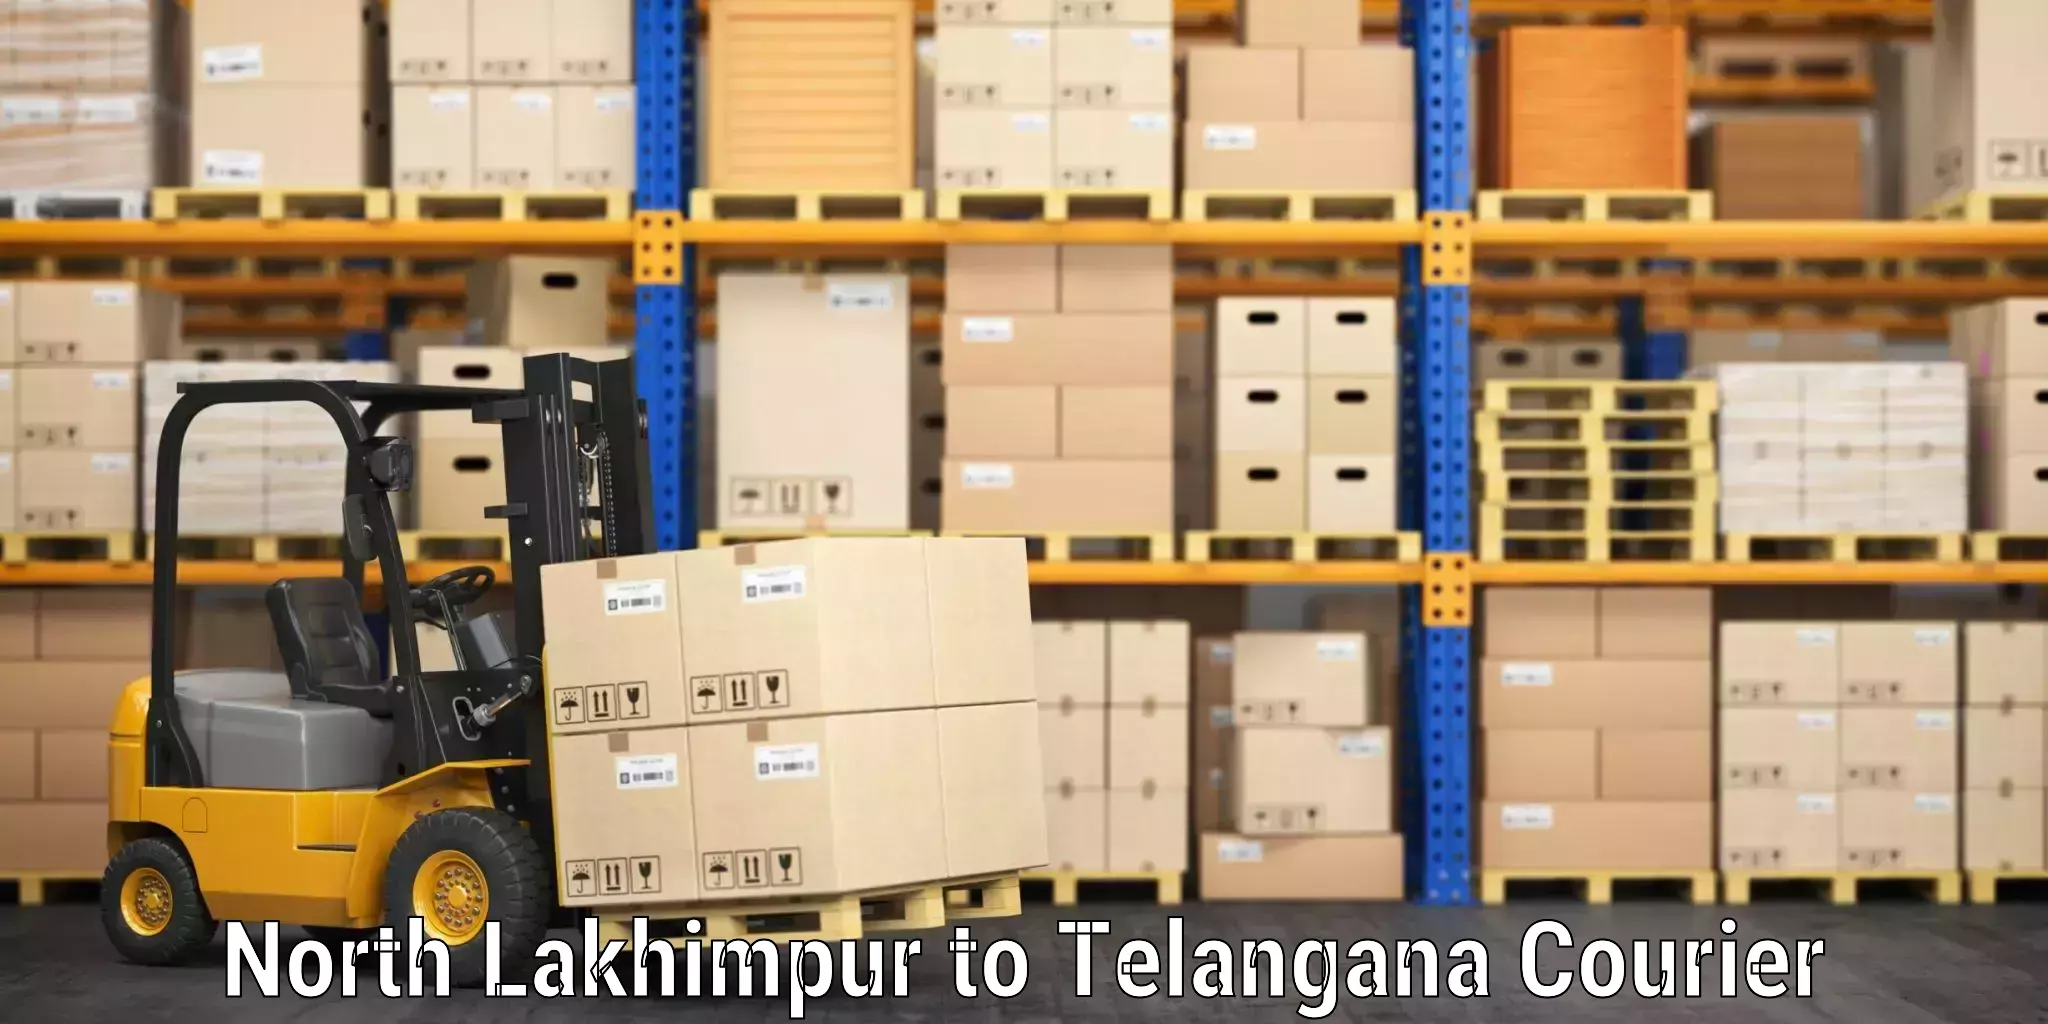 Baggage shipping schedule North Lakhimpur to Telangana